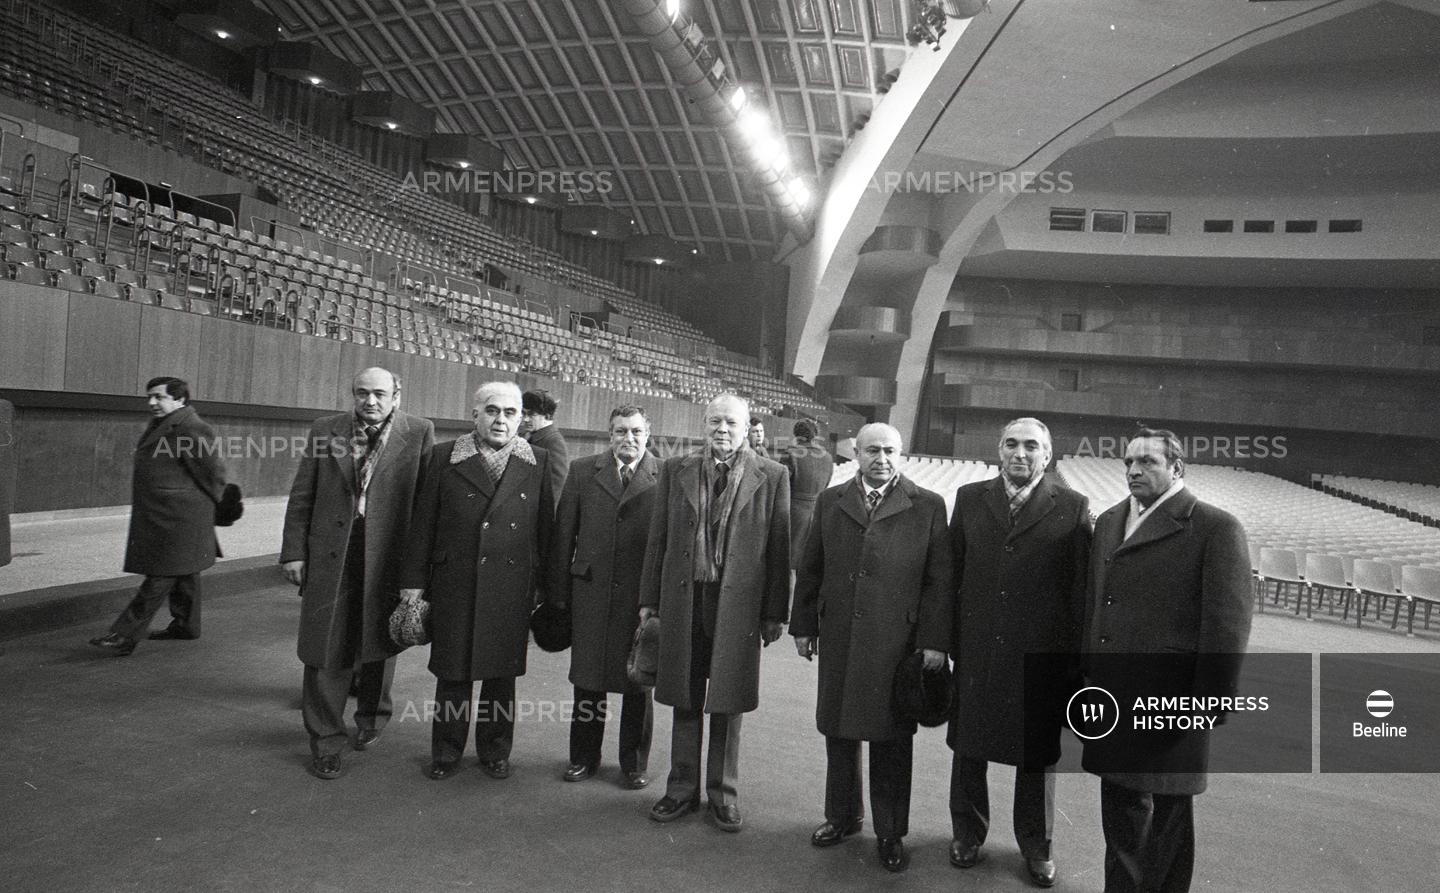 Կառավարության անդամները Ռուսակովի հետ մարզահամերգային համալիրում